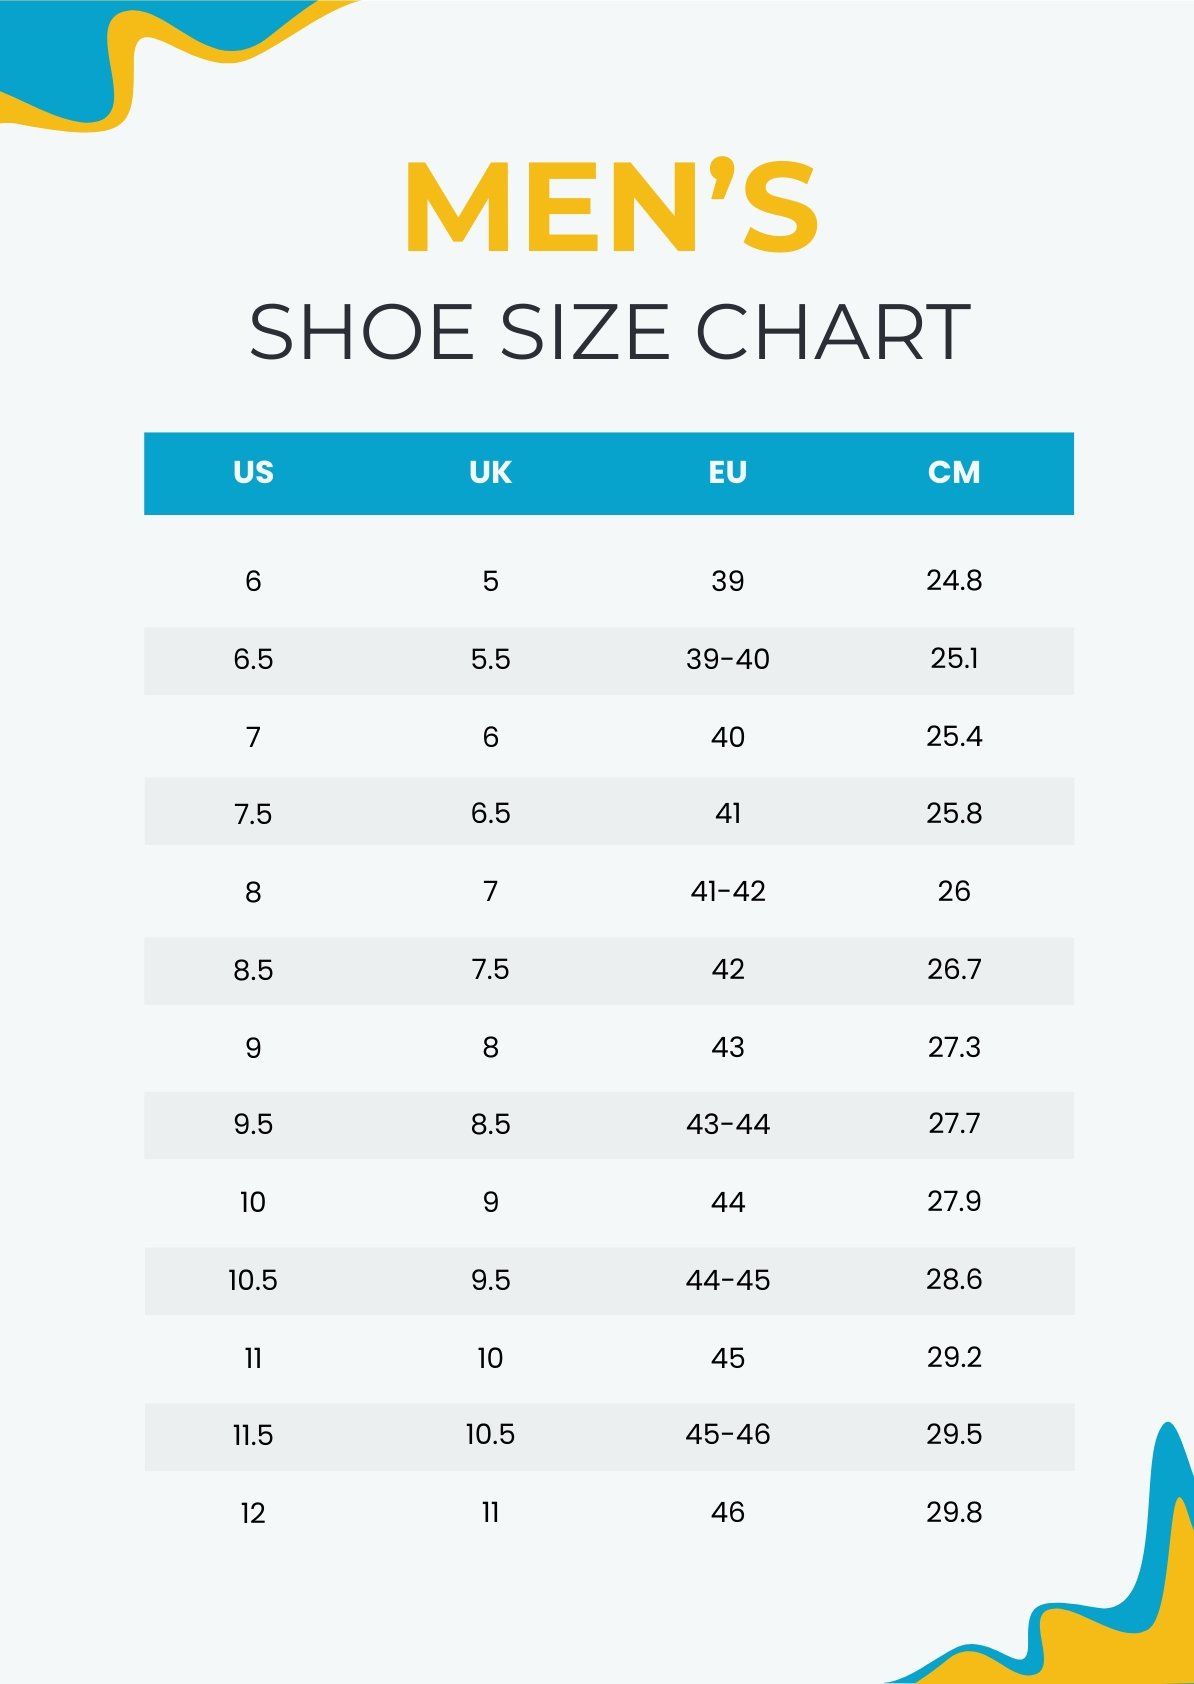 Yesstyle Shoe Size Chart